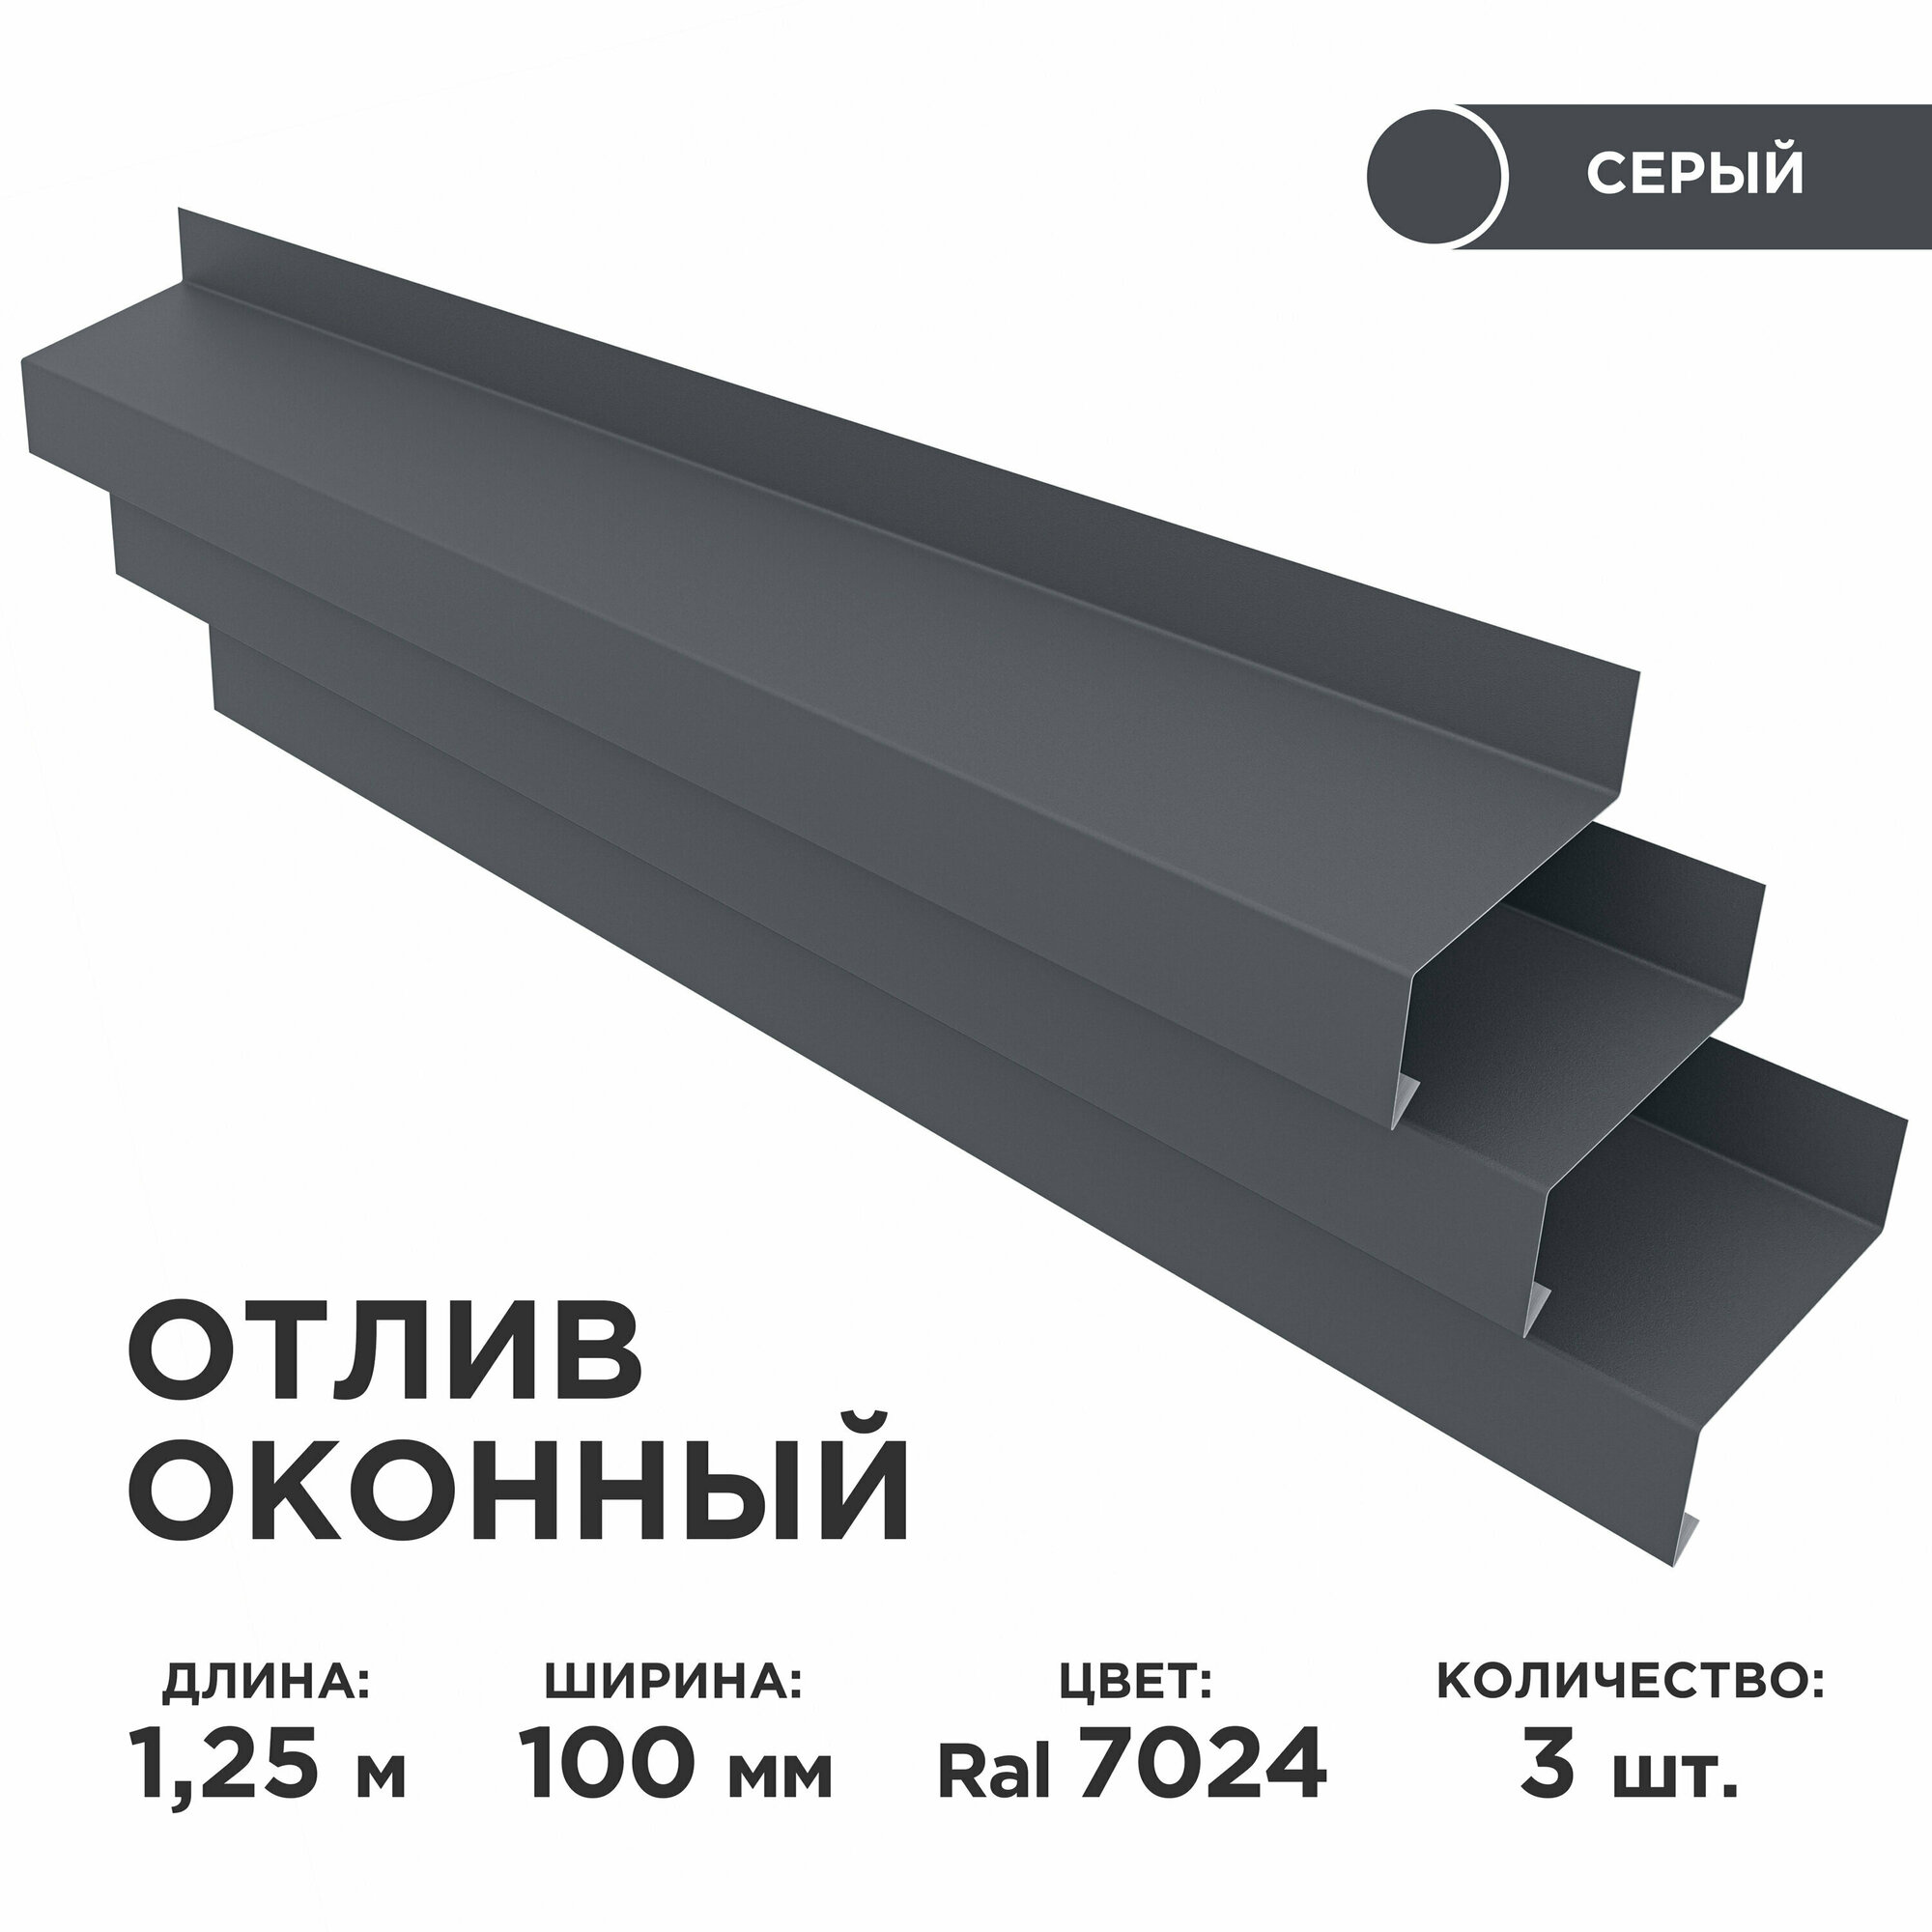 Отлив оконный ширина полки 100мм/ отлив для окна / цвет серый(RAL 7024) Длина 125м 3 штуки в комплекте